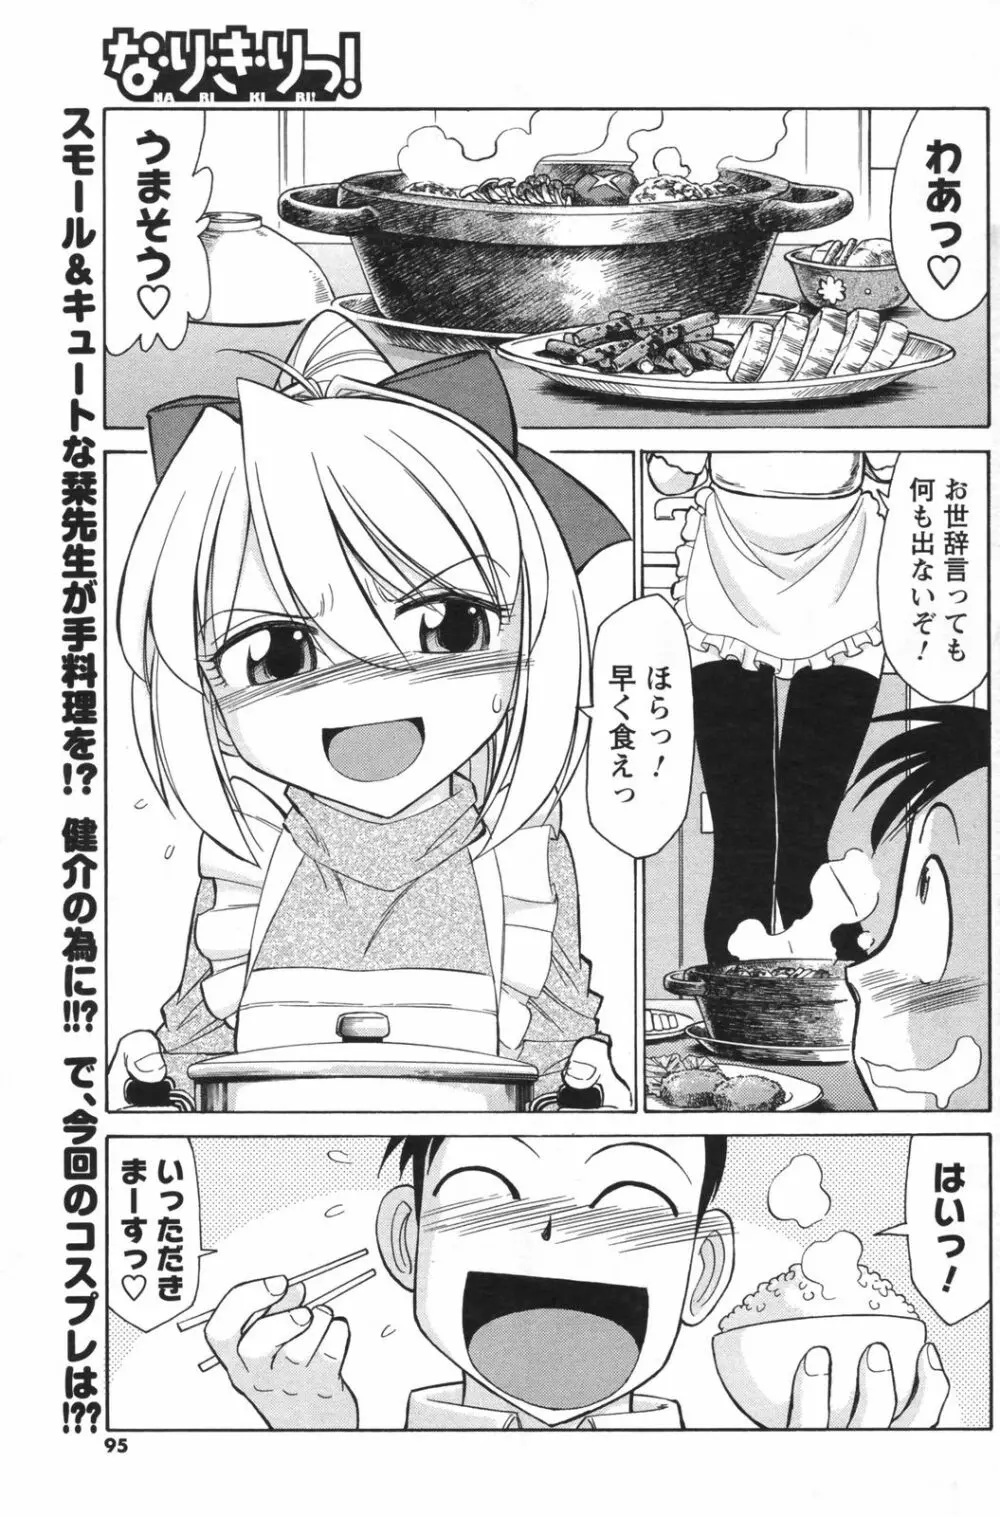 メンズヤングスペシャルIKAZUCHI雷 Vol.5 2008年3月号増刊 95ページ